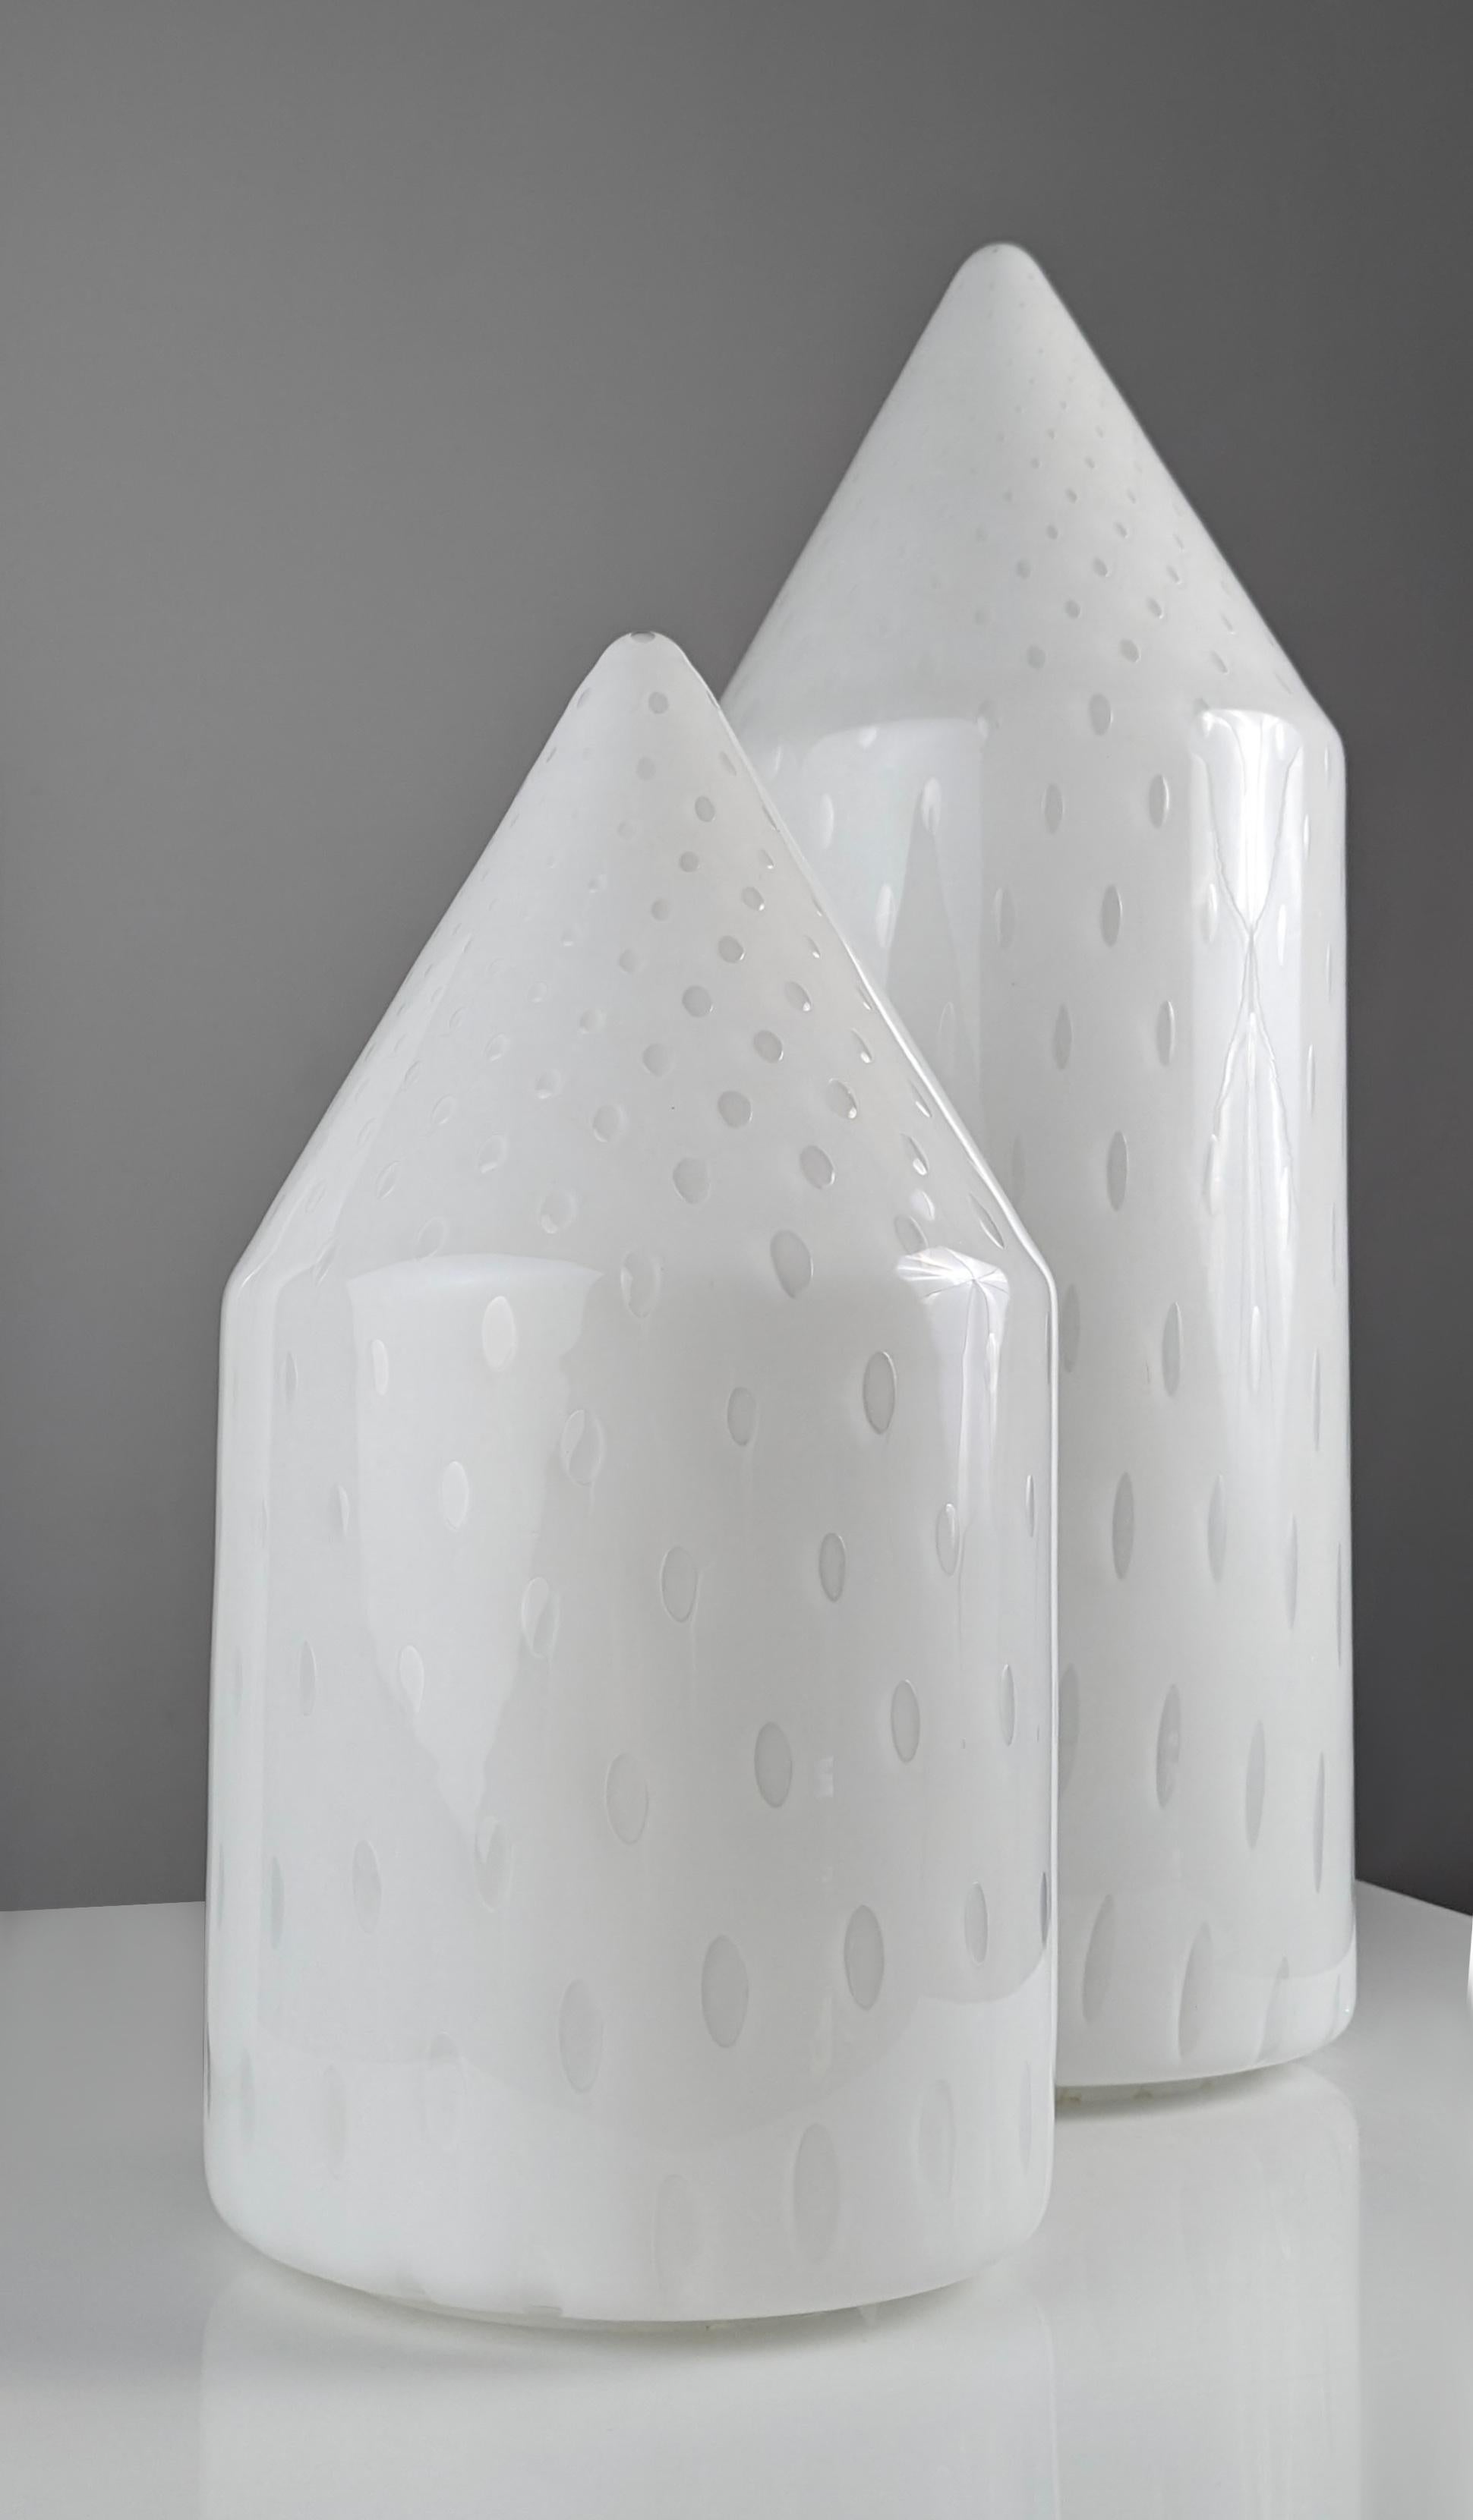 Magnifique paire de lampes de table des années 1980 créées par Vetri Murano, en verre soufflé de Murano avec un joli motif de bulles à l'intérieur, offrant un éclairage élégant et proéminent pour n'importe quelle pièce.

Grandes dimensions : 50 cm x